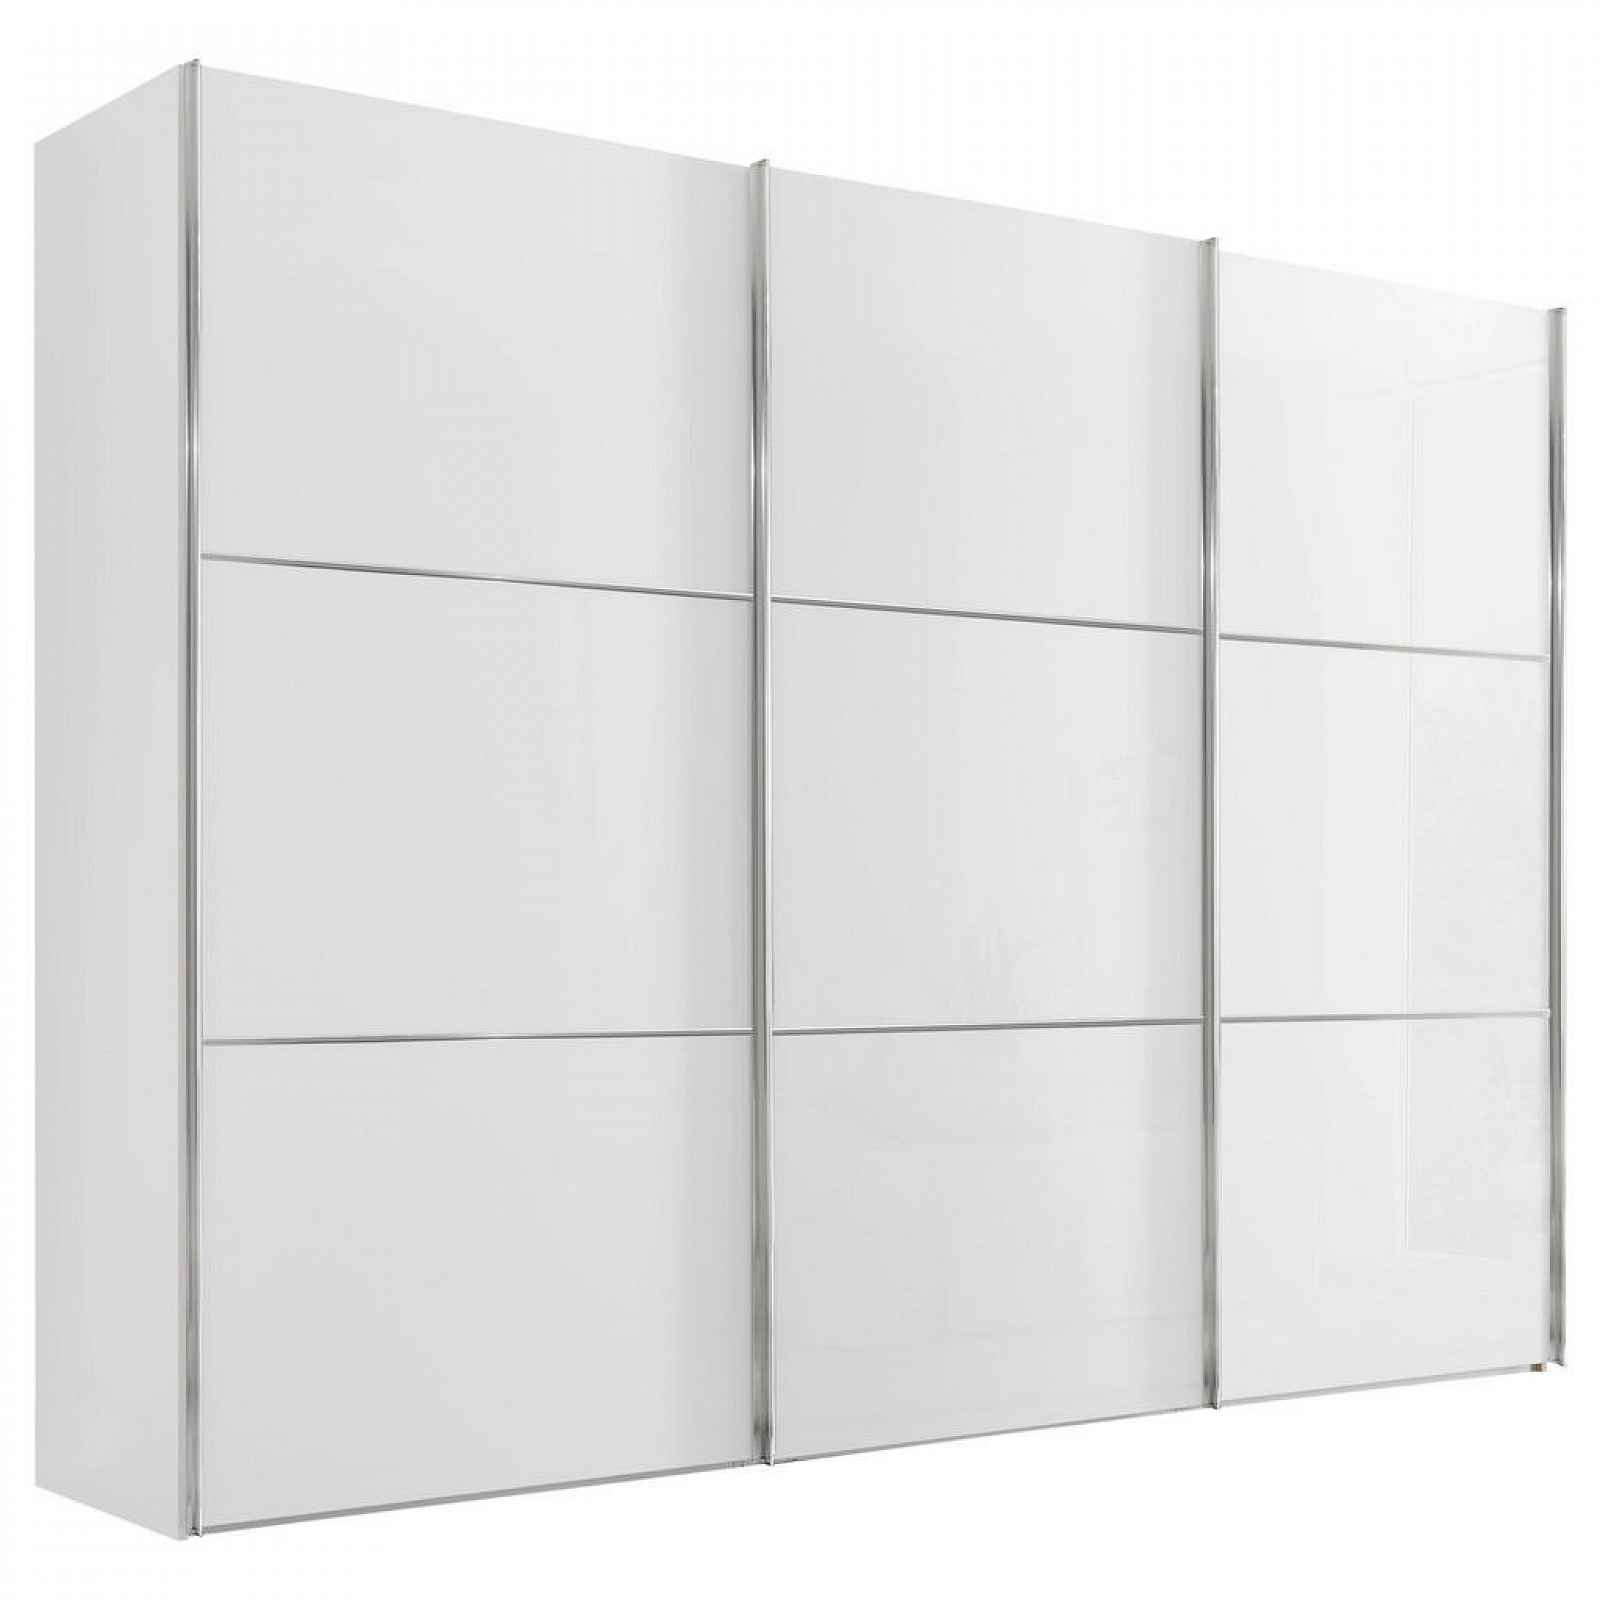 Moderano SCHWEBETÜRENSCHRANK Glasfront, bílá, 280/222/68 cm - Šatní skříně - 000531006077